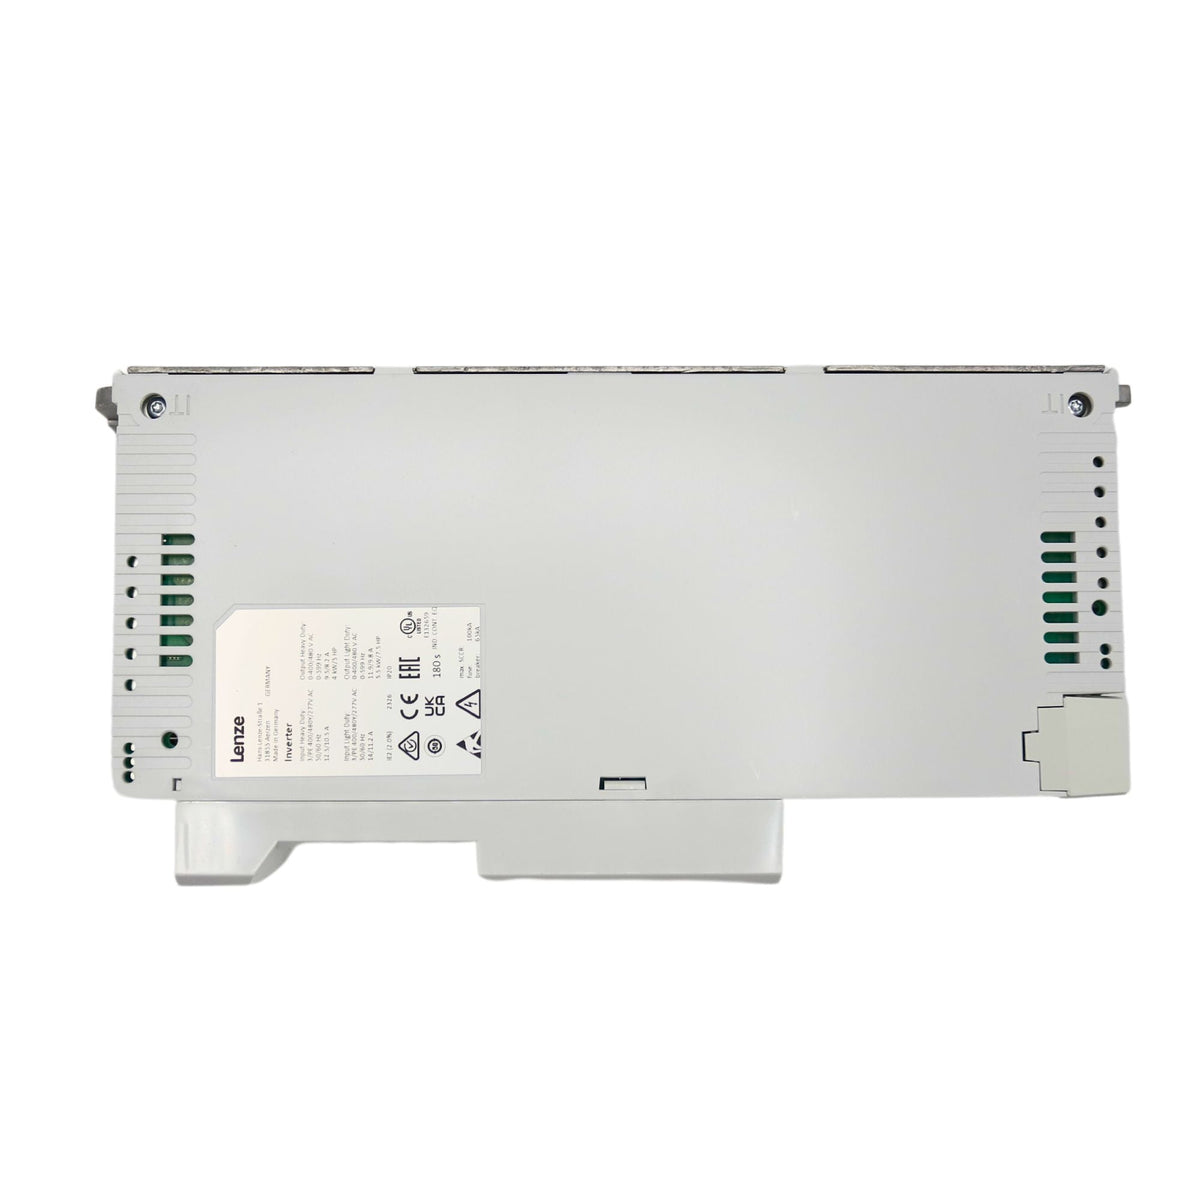 Lenze | i510 5hp Cabinet mount 480volt 5digital inputs, 2 analog inputs, 1 digital output 1 analog Output, 1 relay | I51BE240F10V11000S - side view